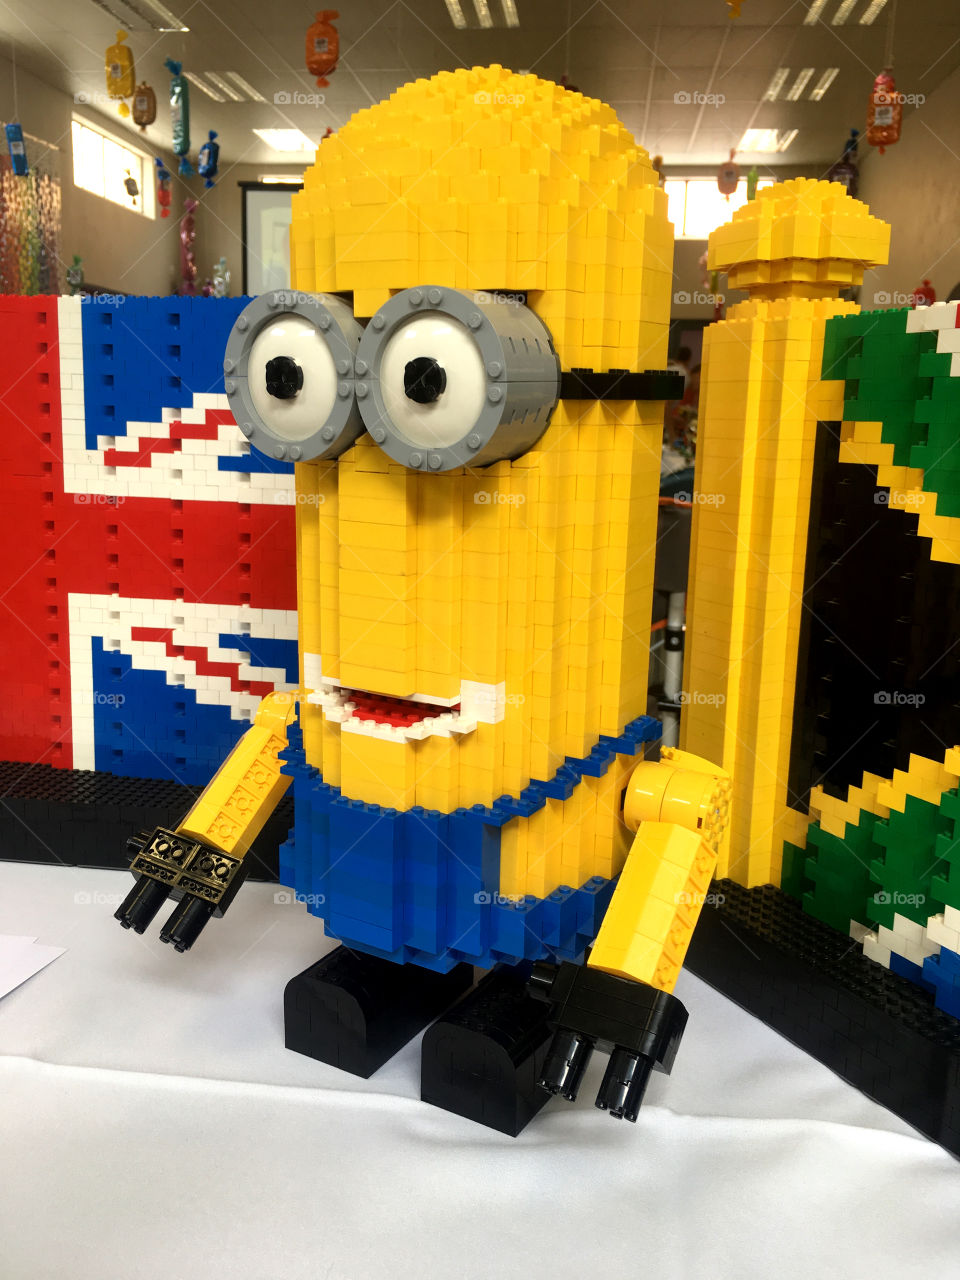 Minion Lego figure